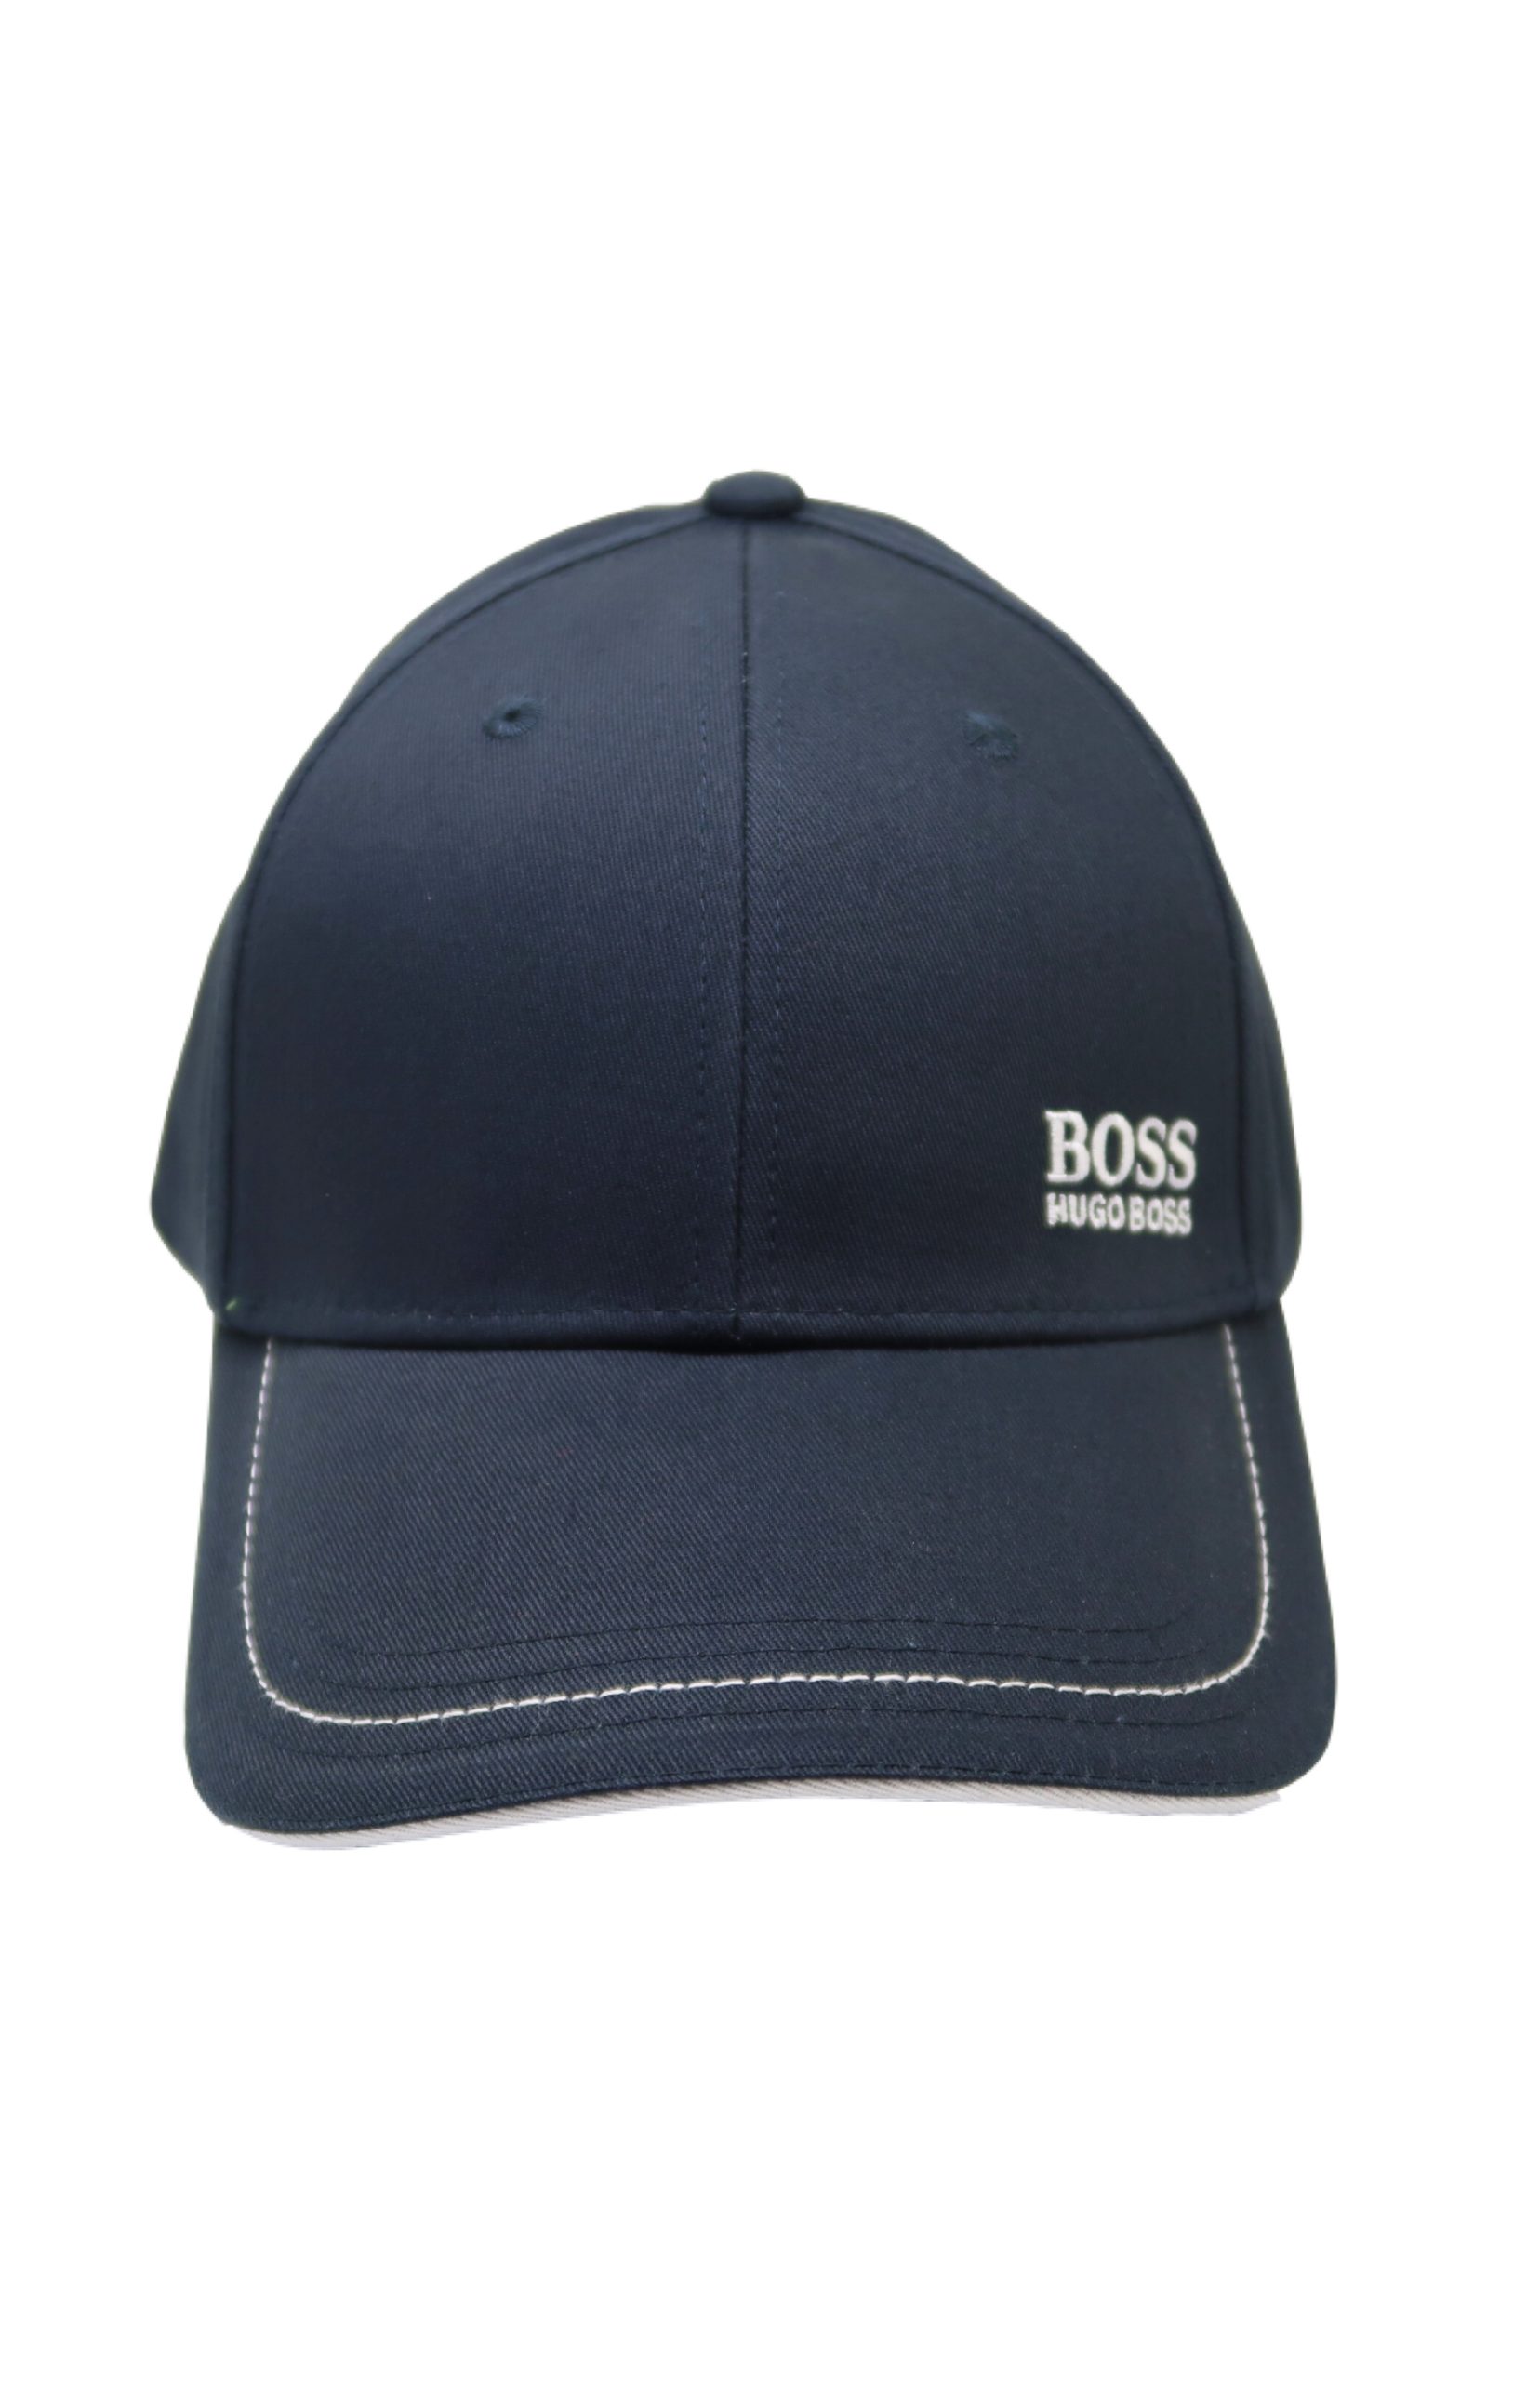 hugo boss baseball cap